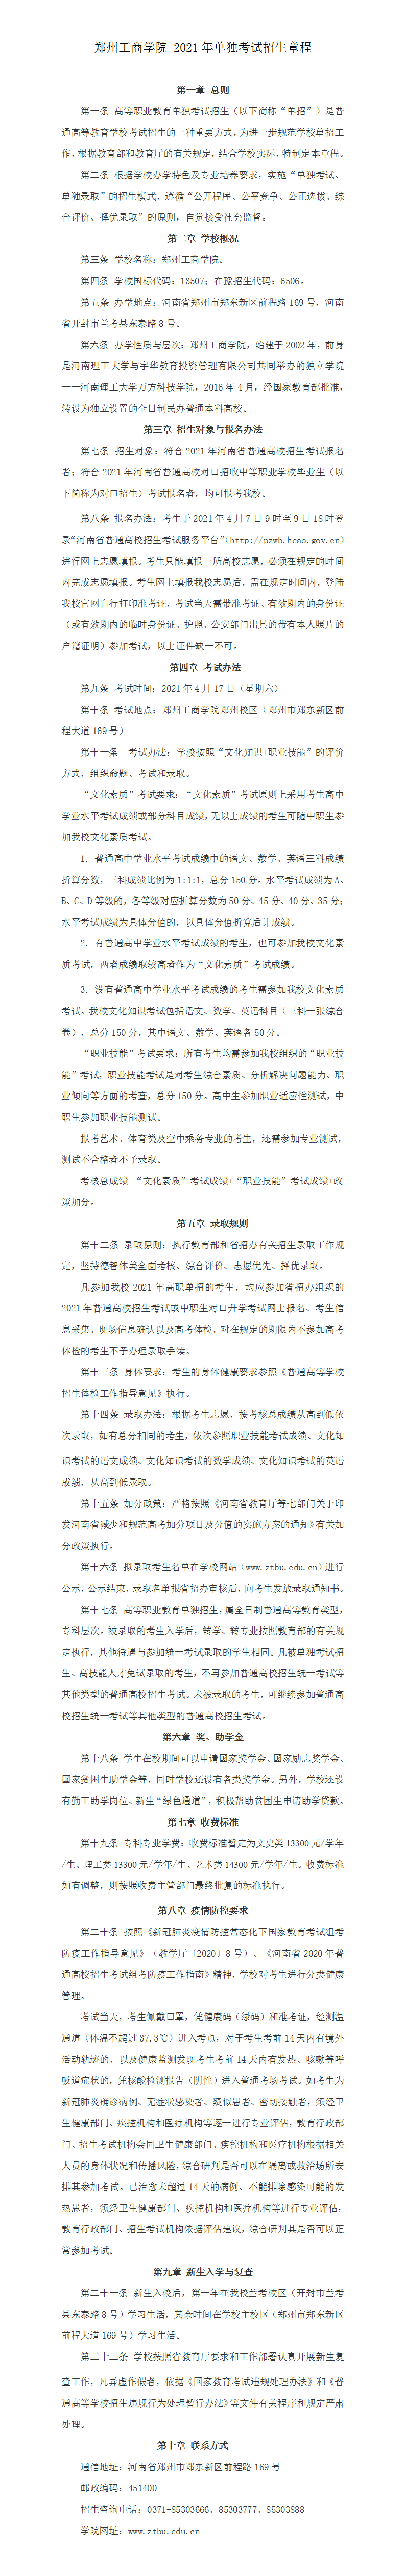 郑州工商学院2021年单独考试招生章程20210330.png